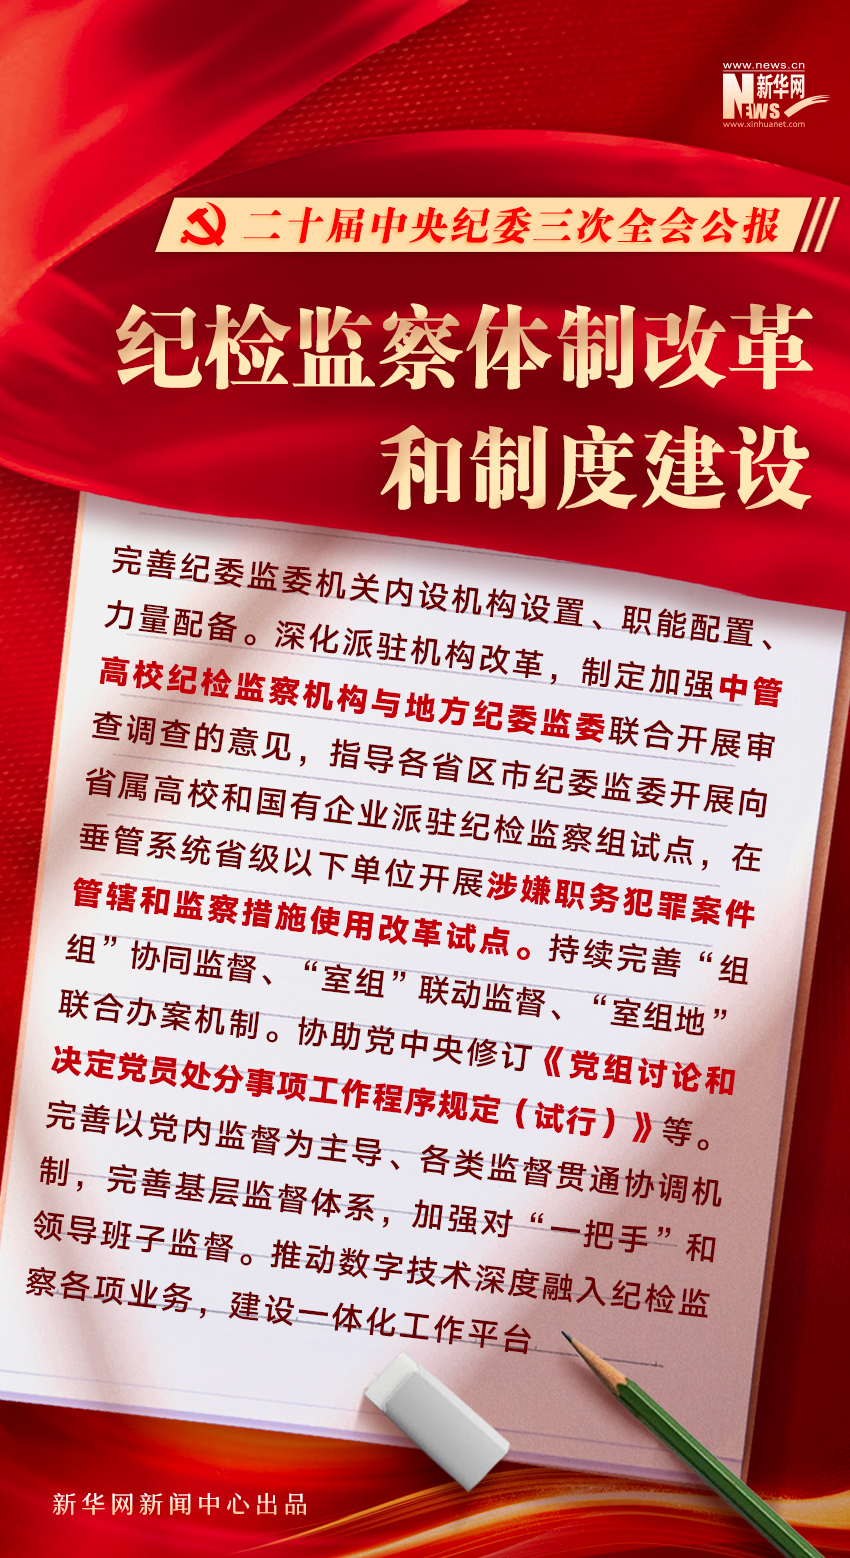 二十届中央纪委三次全会公报发布，透露这些重要信息